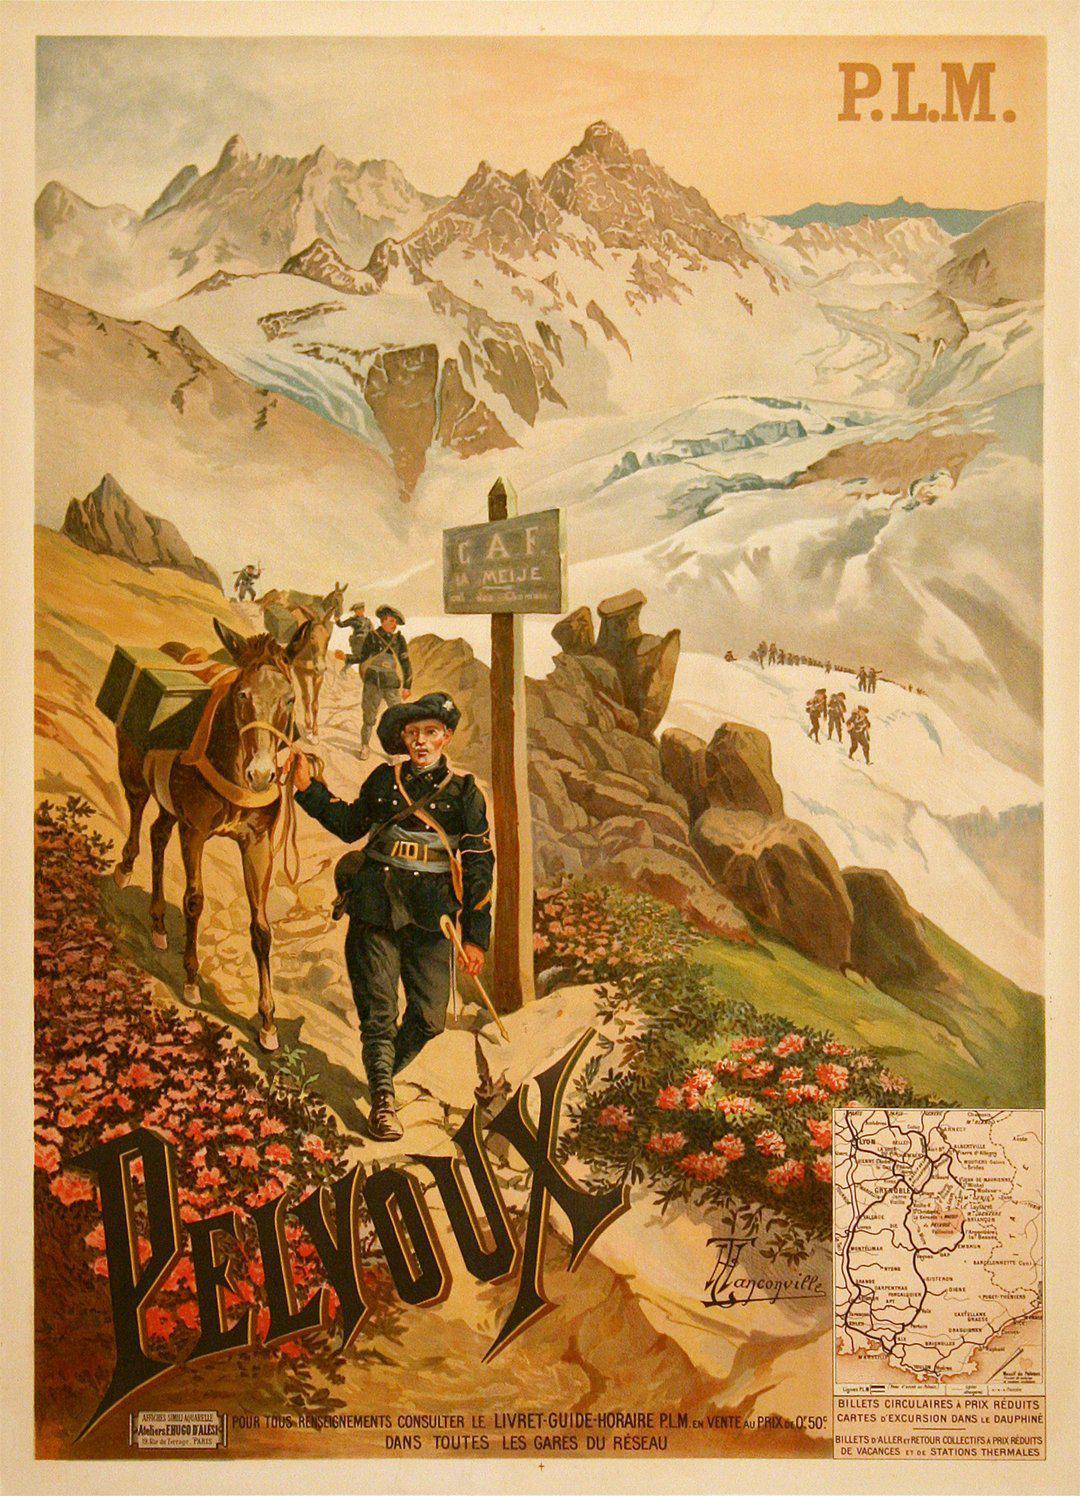 Original Vintage PLM Train Poster to Pelvoux by Henri Tanconville 1895